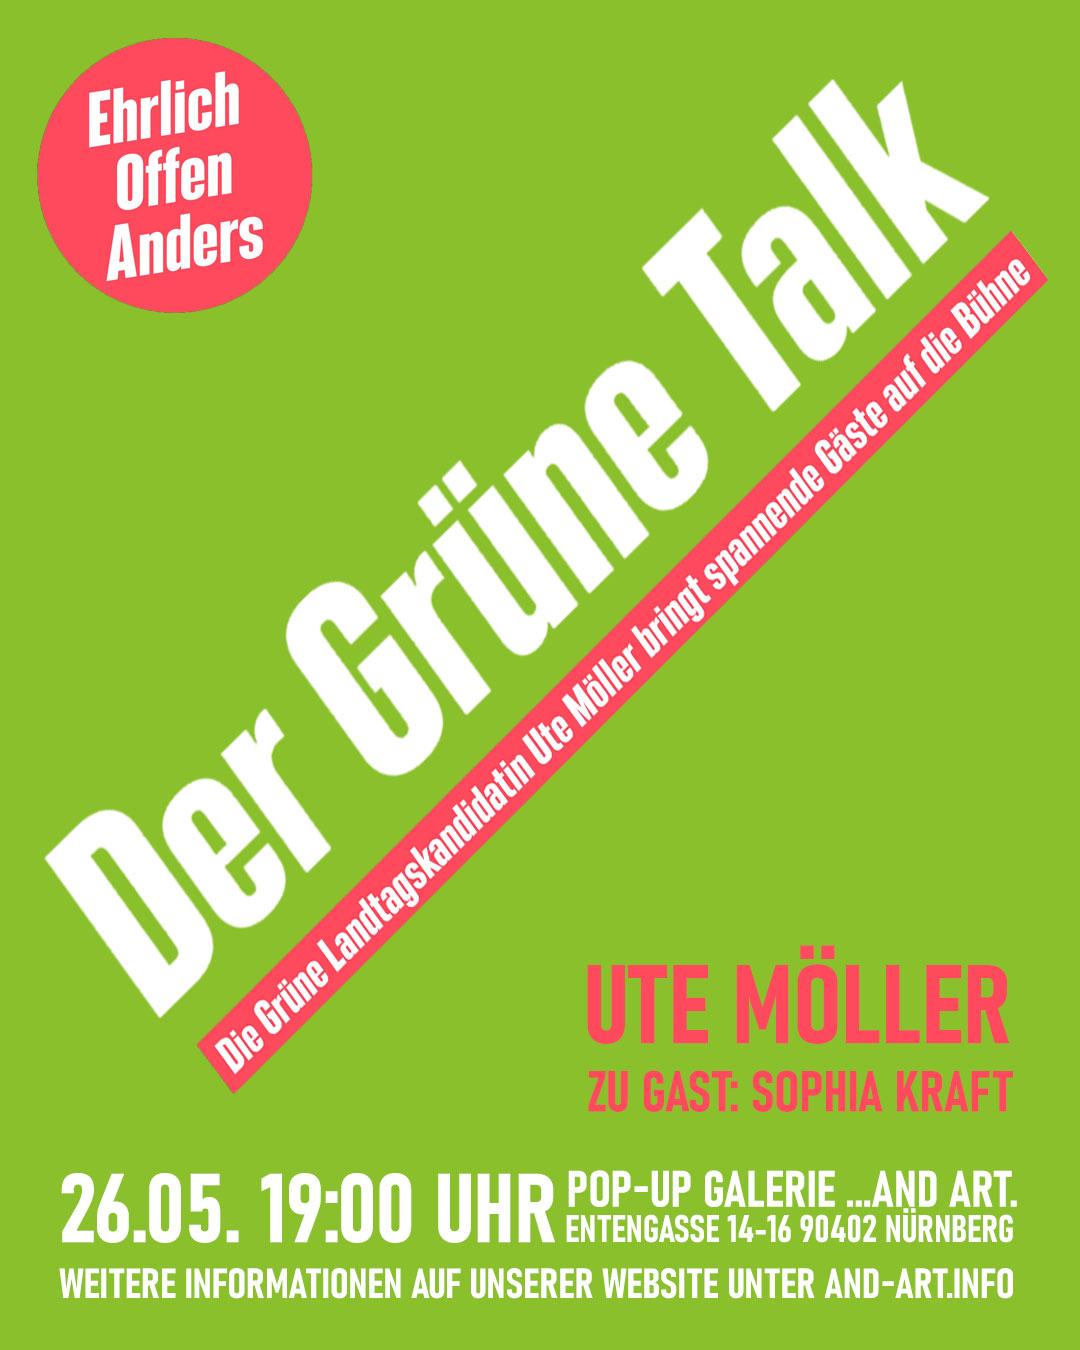 Der Grüne Talk am 26.05. mit Ute Möller und Sophia Kraft.